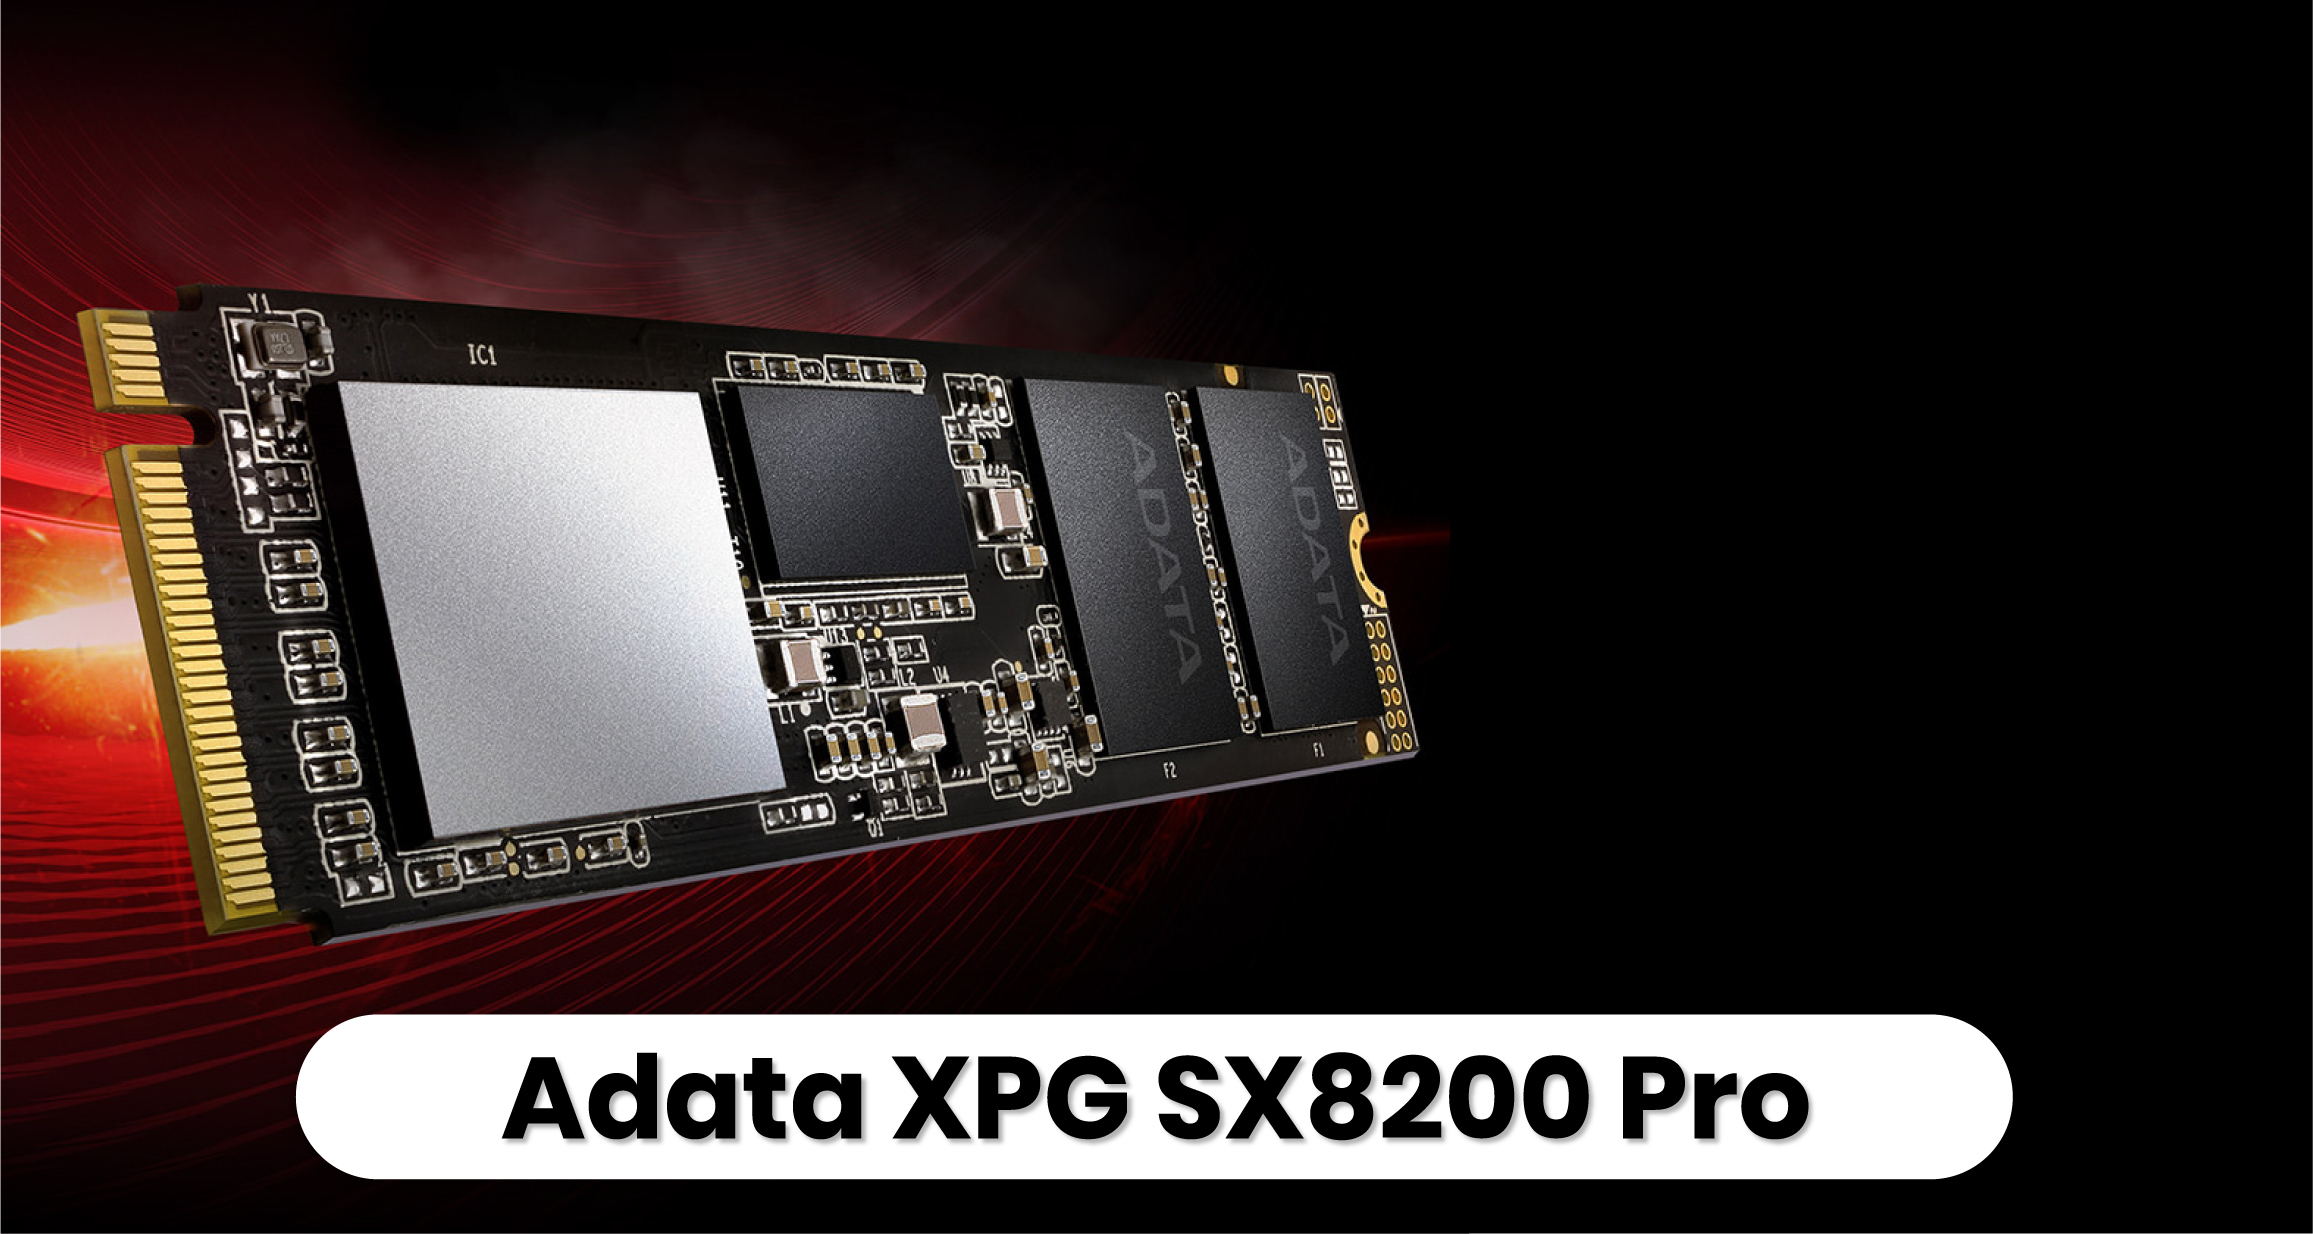 Rekomendasi SSD Terbaik - Adata XPG SX8200 Pro